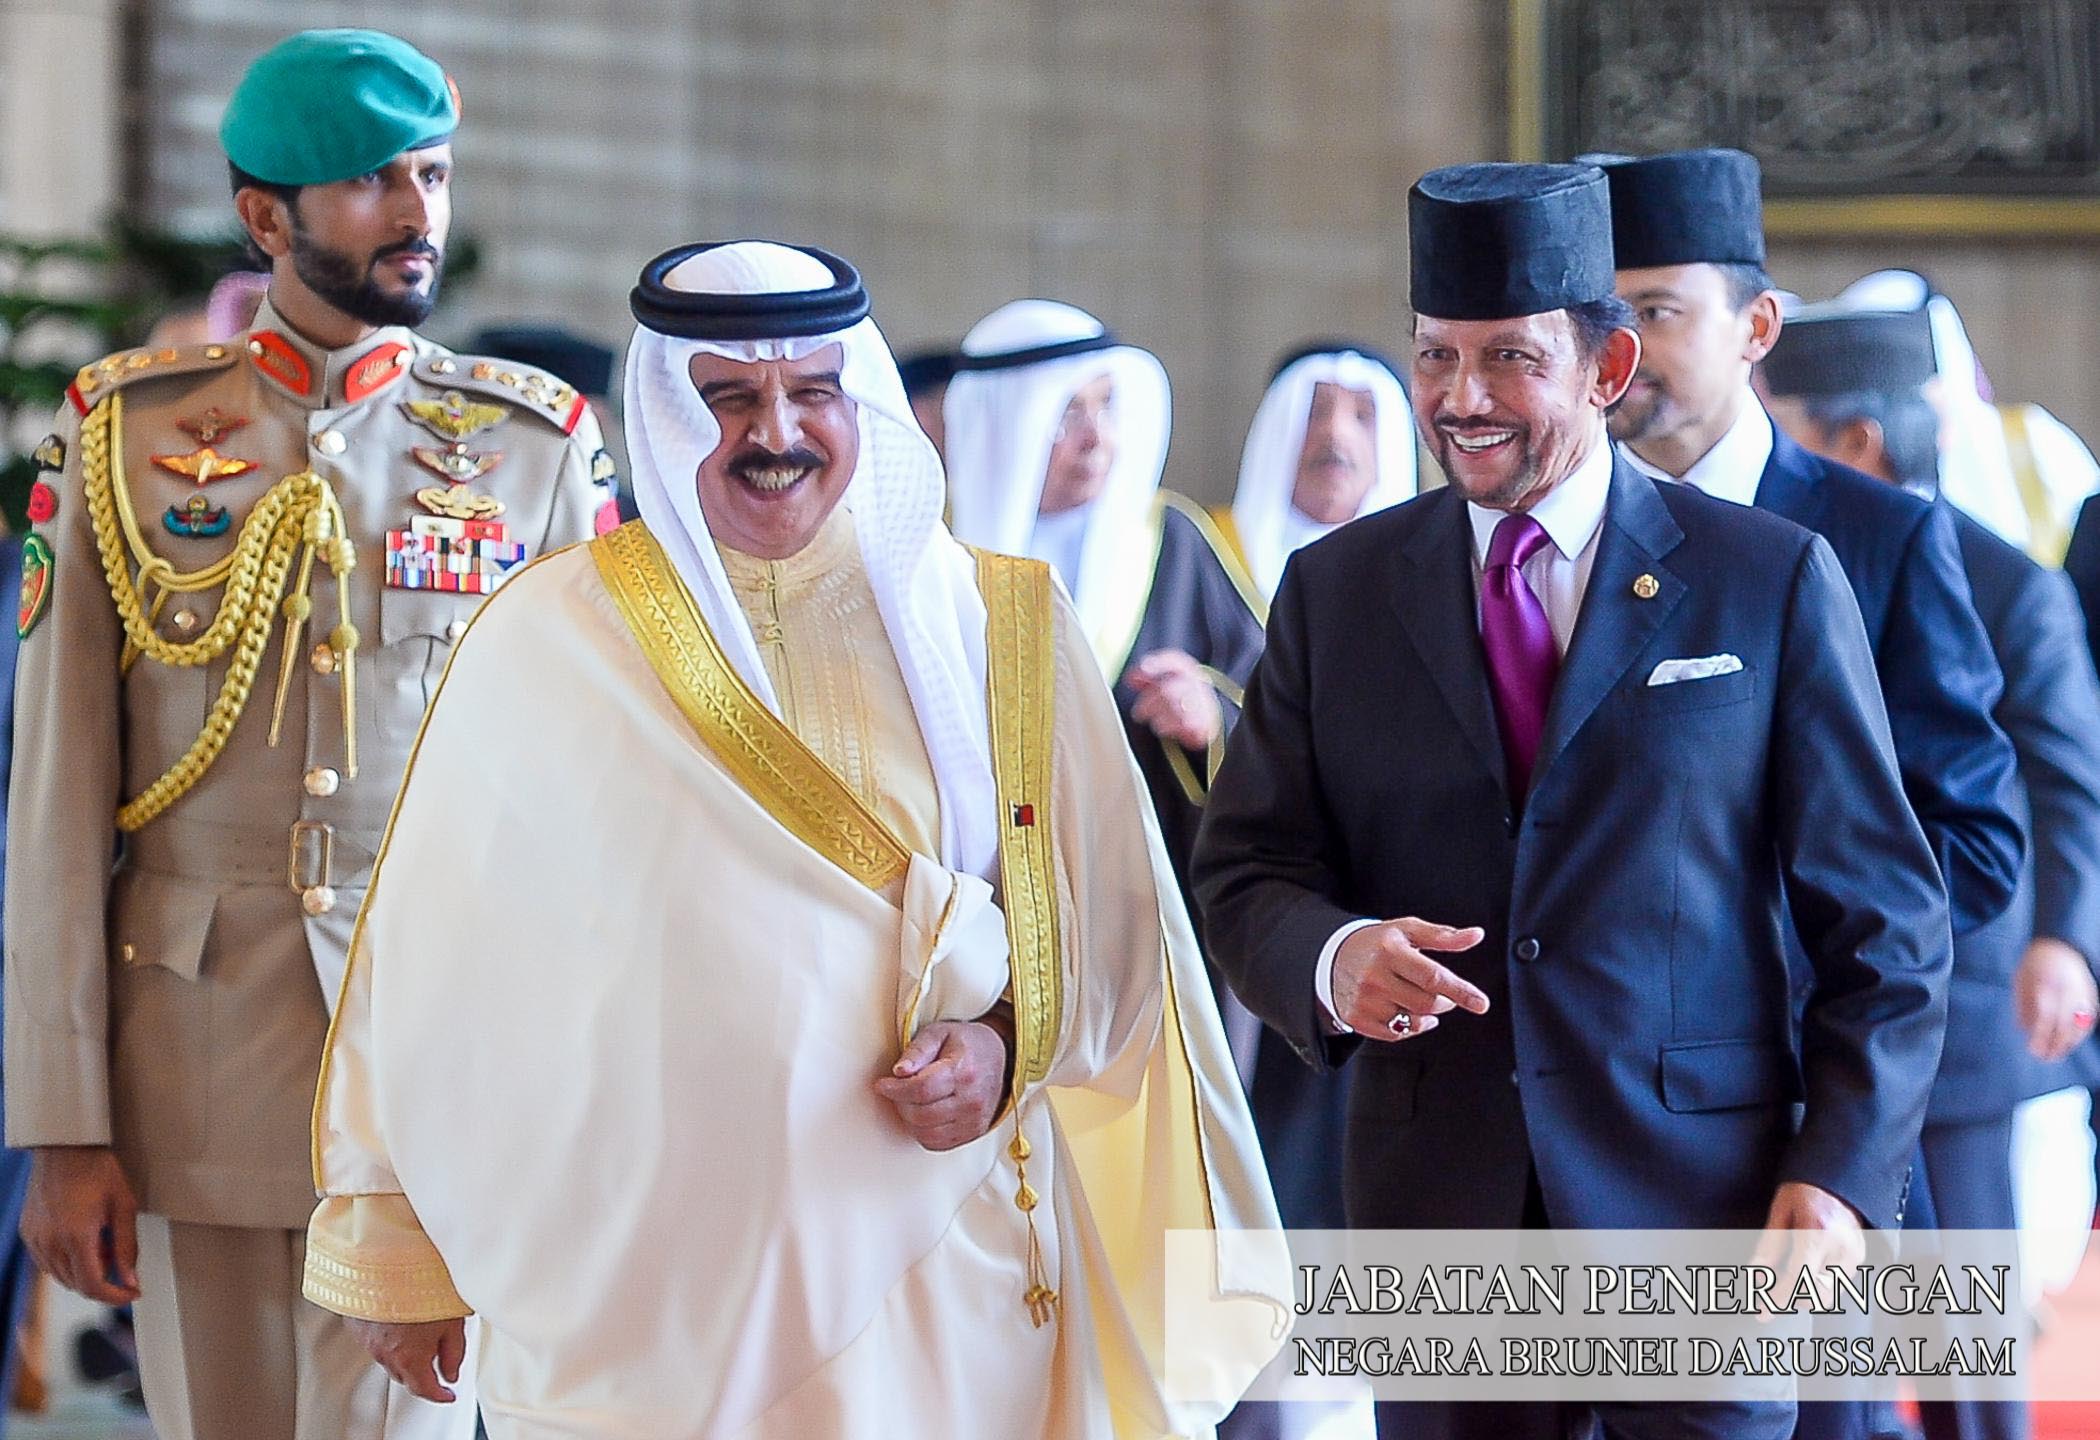 Kebawah DYMM akan adakan Keberangkatan Negara ke kingdom Of Bahrain